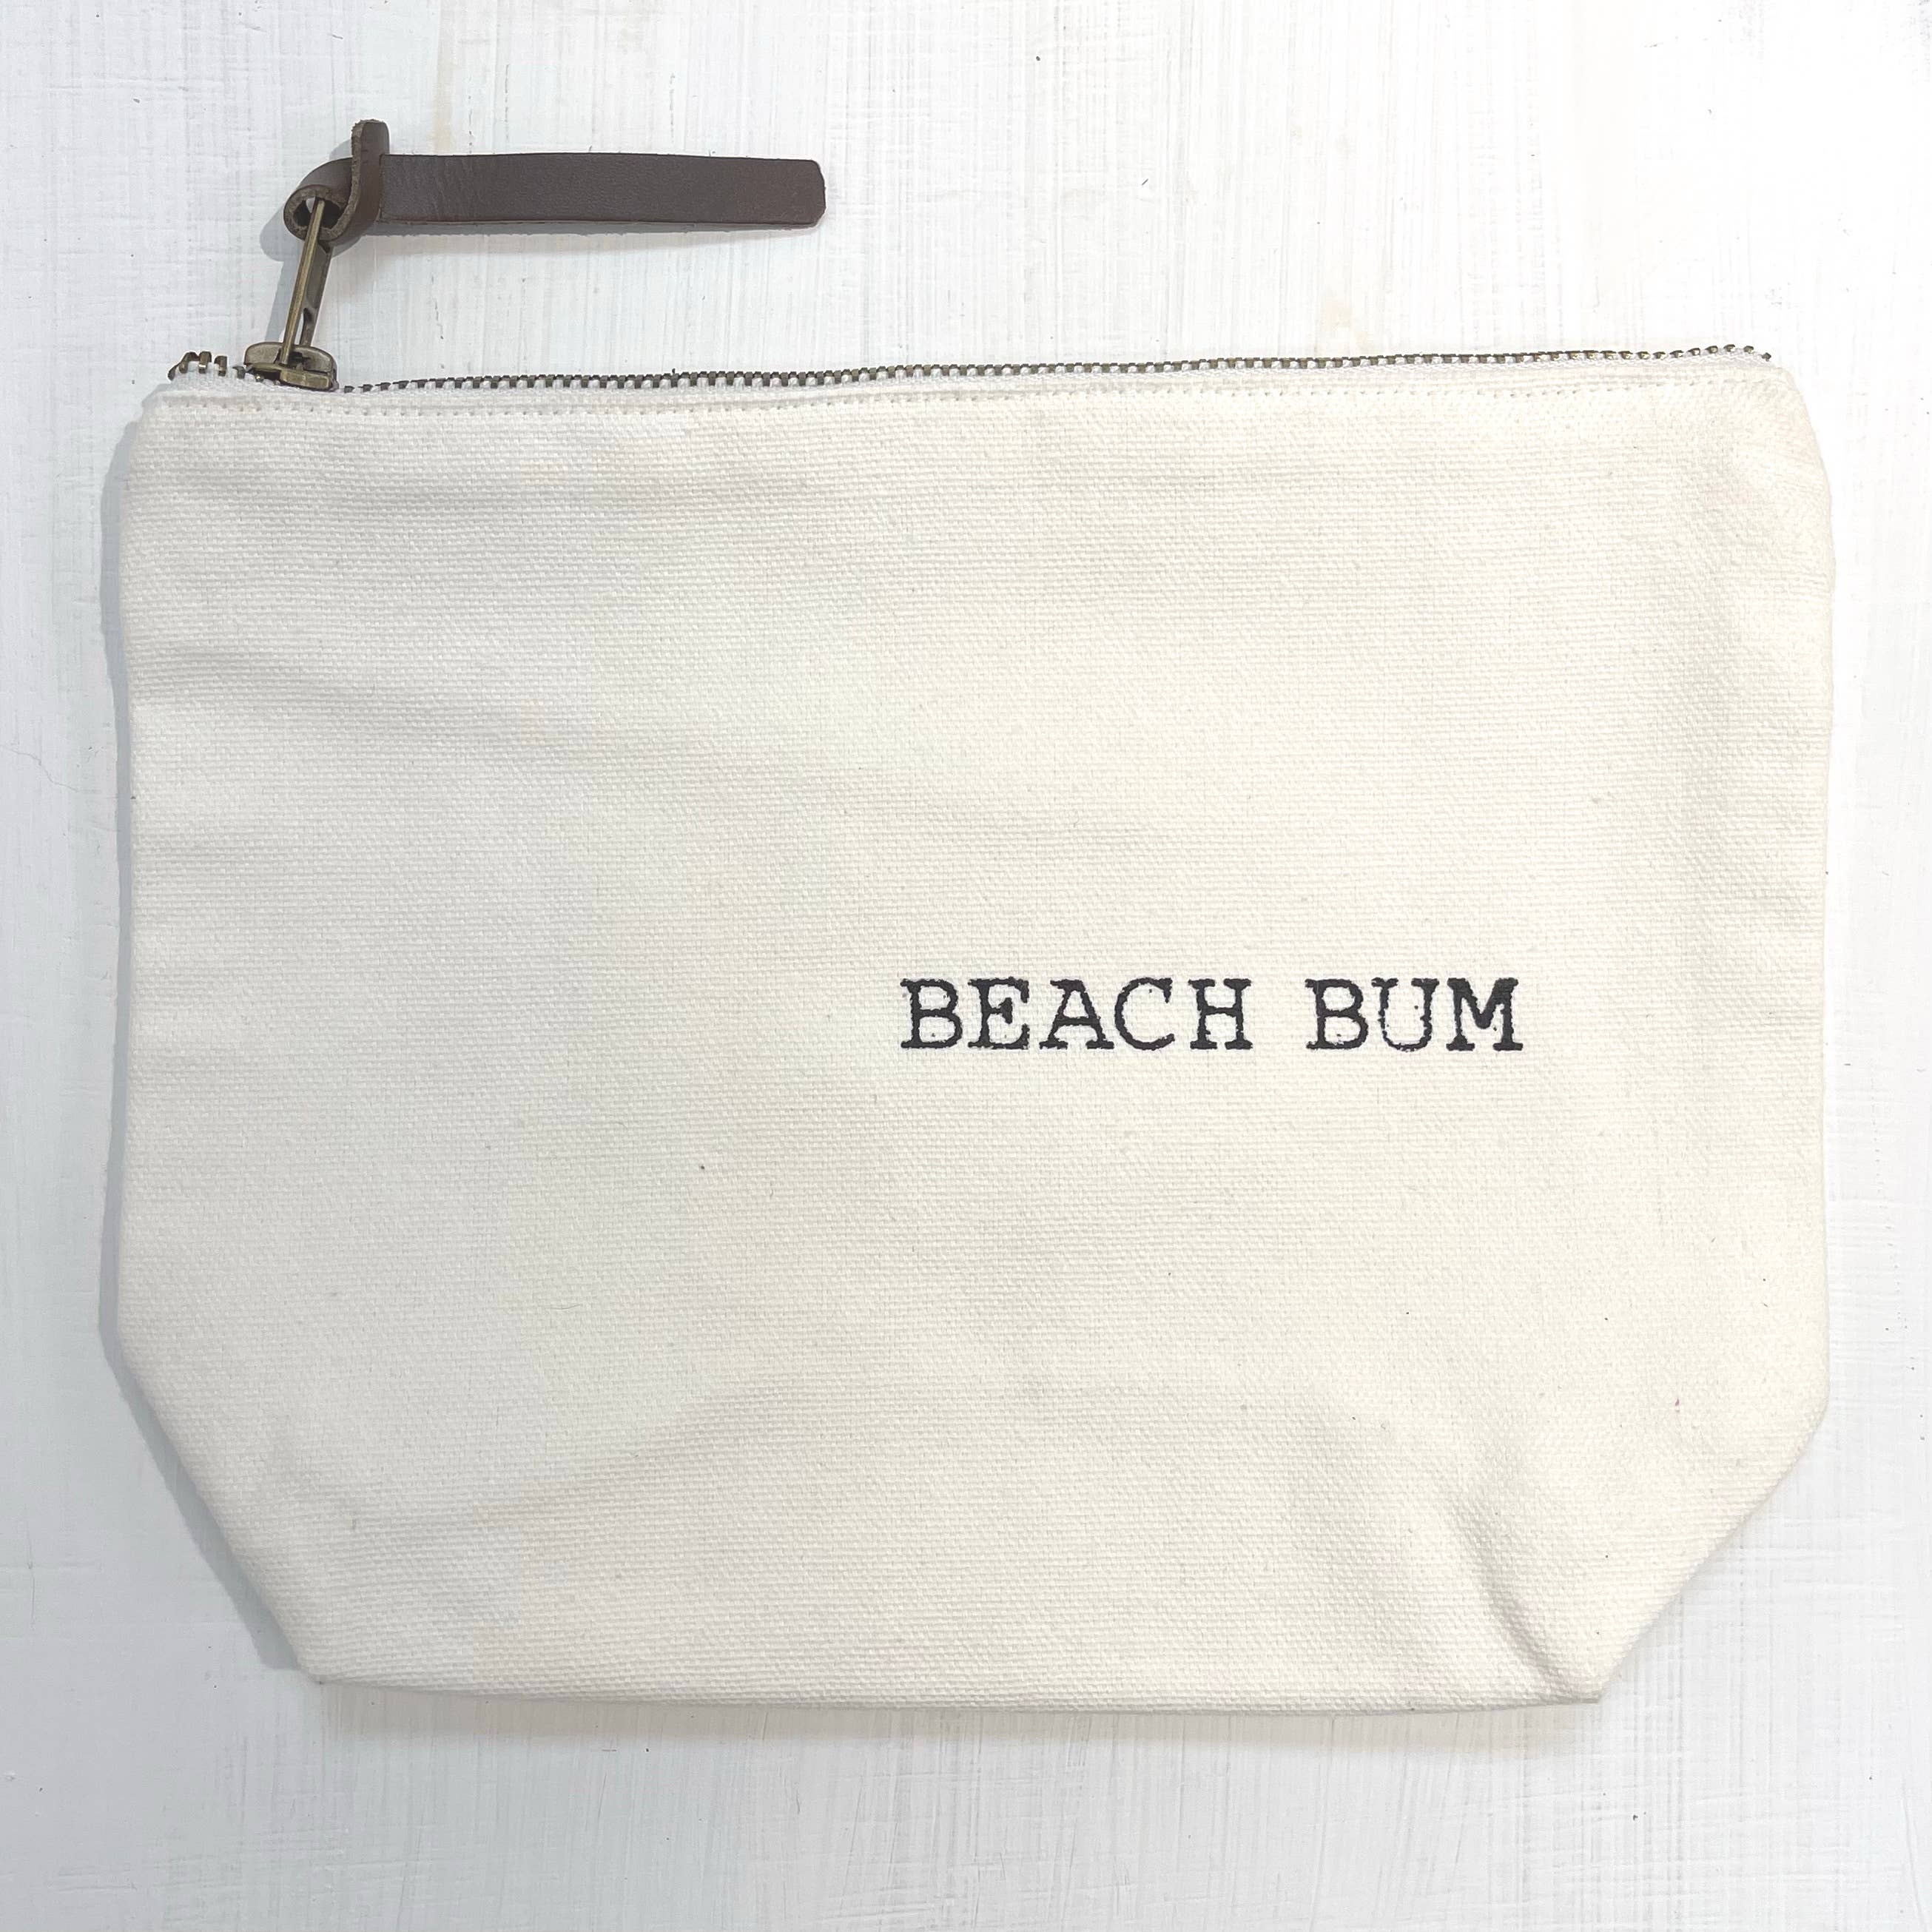 'Beach Bum' Cotton Makeup Pouch